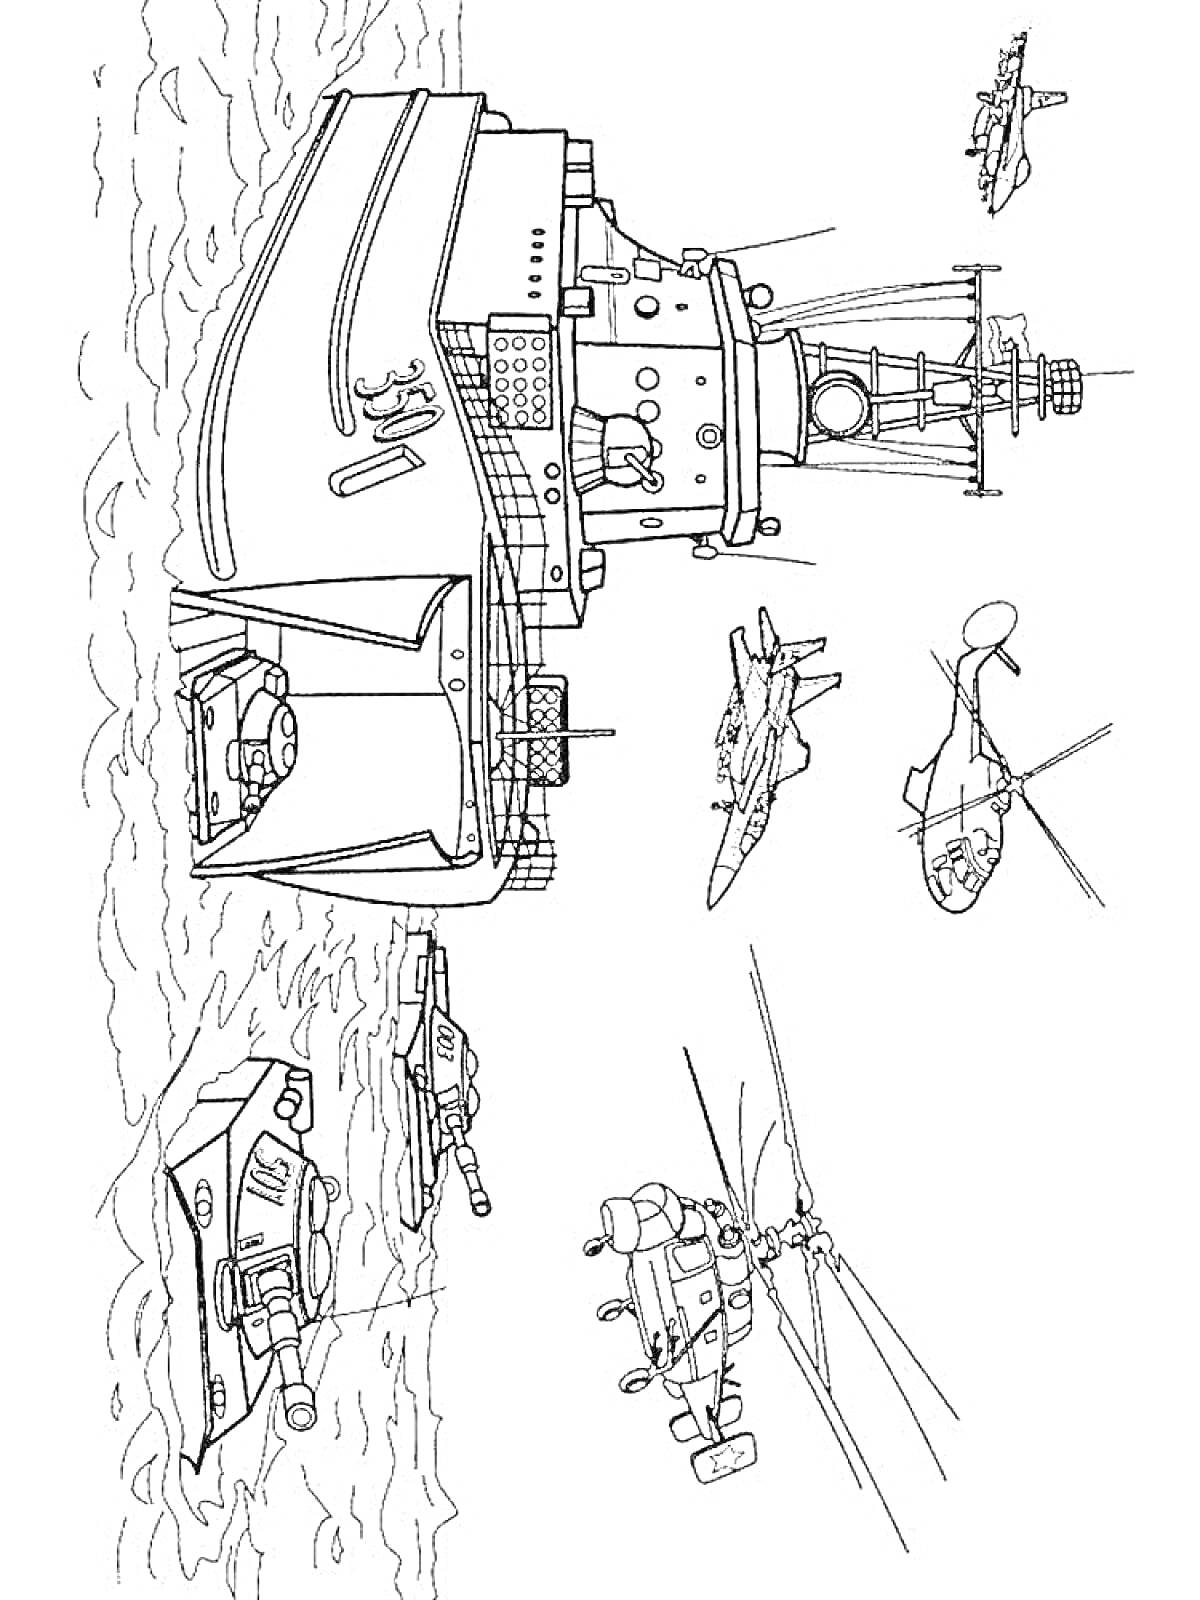 Военная техника на воде и в воздухе (корабль, самолеты, вертолеты, танк)